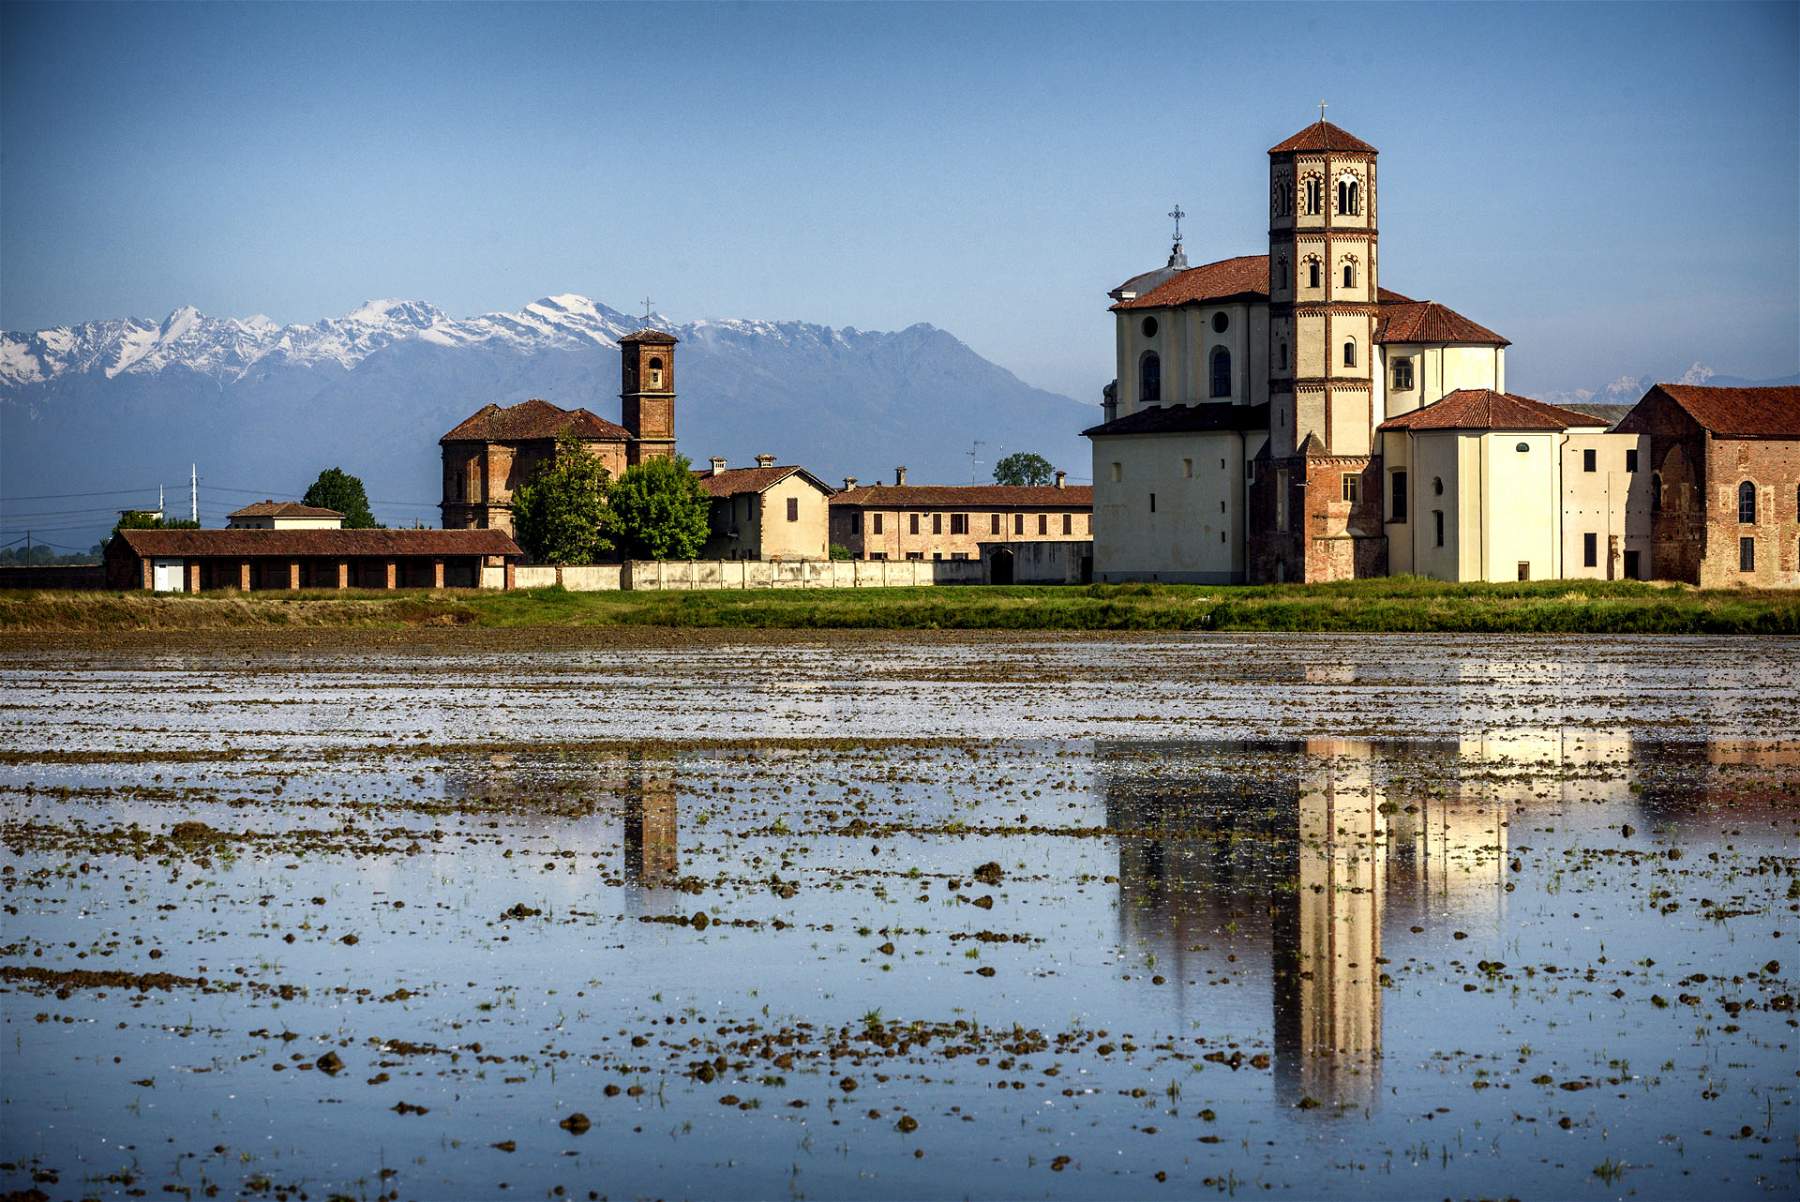 Vercelli, fünf schöne Pfarrkirchen inmitten von Reisfeldern